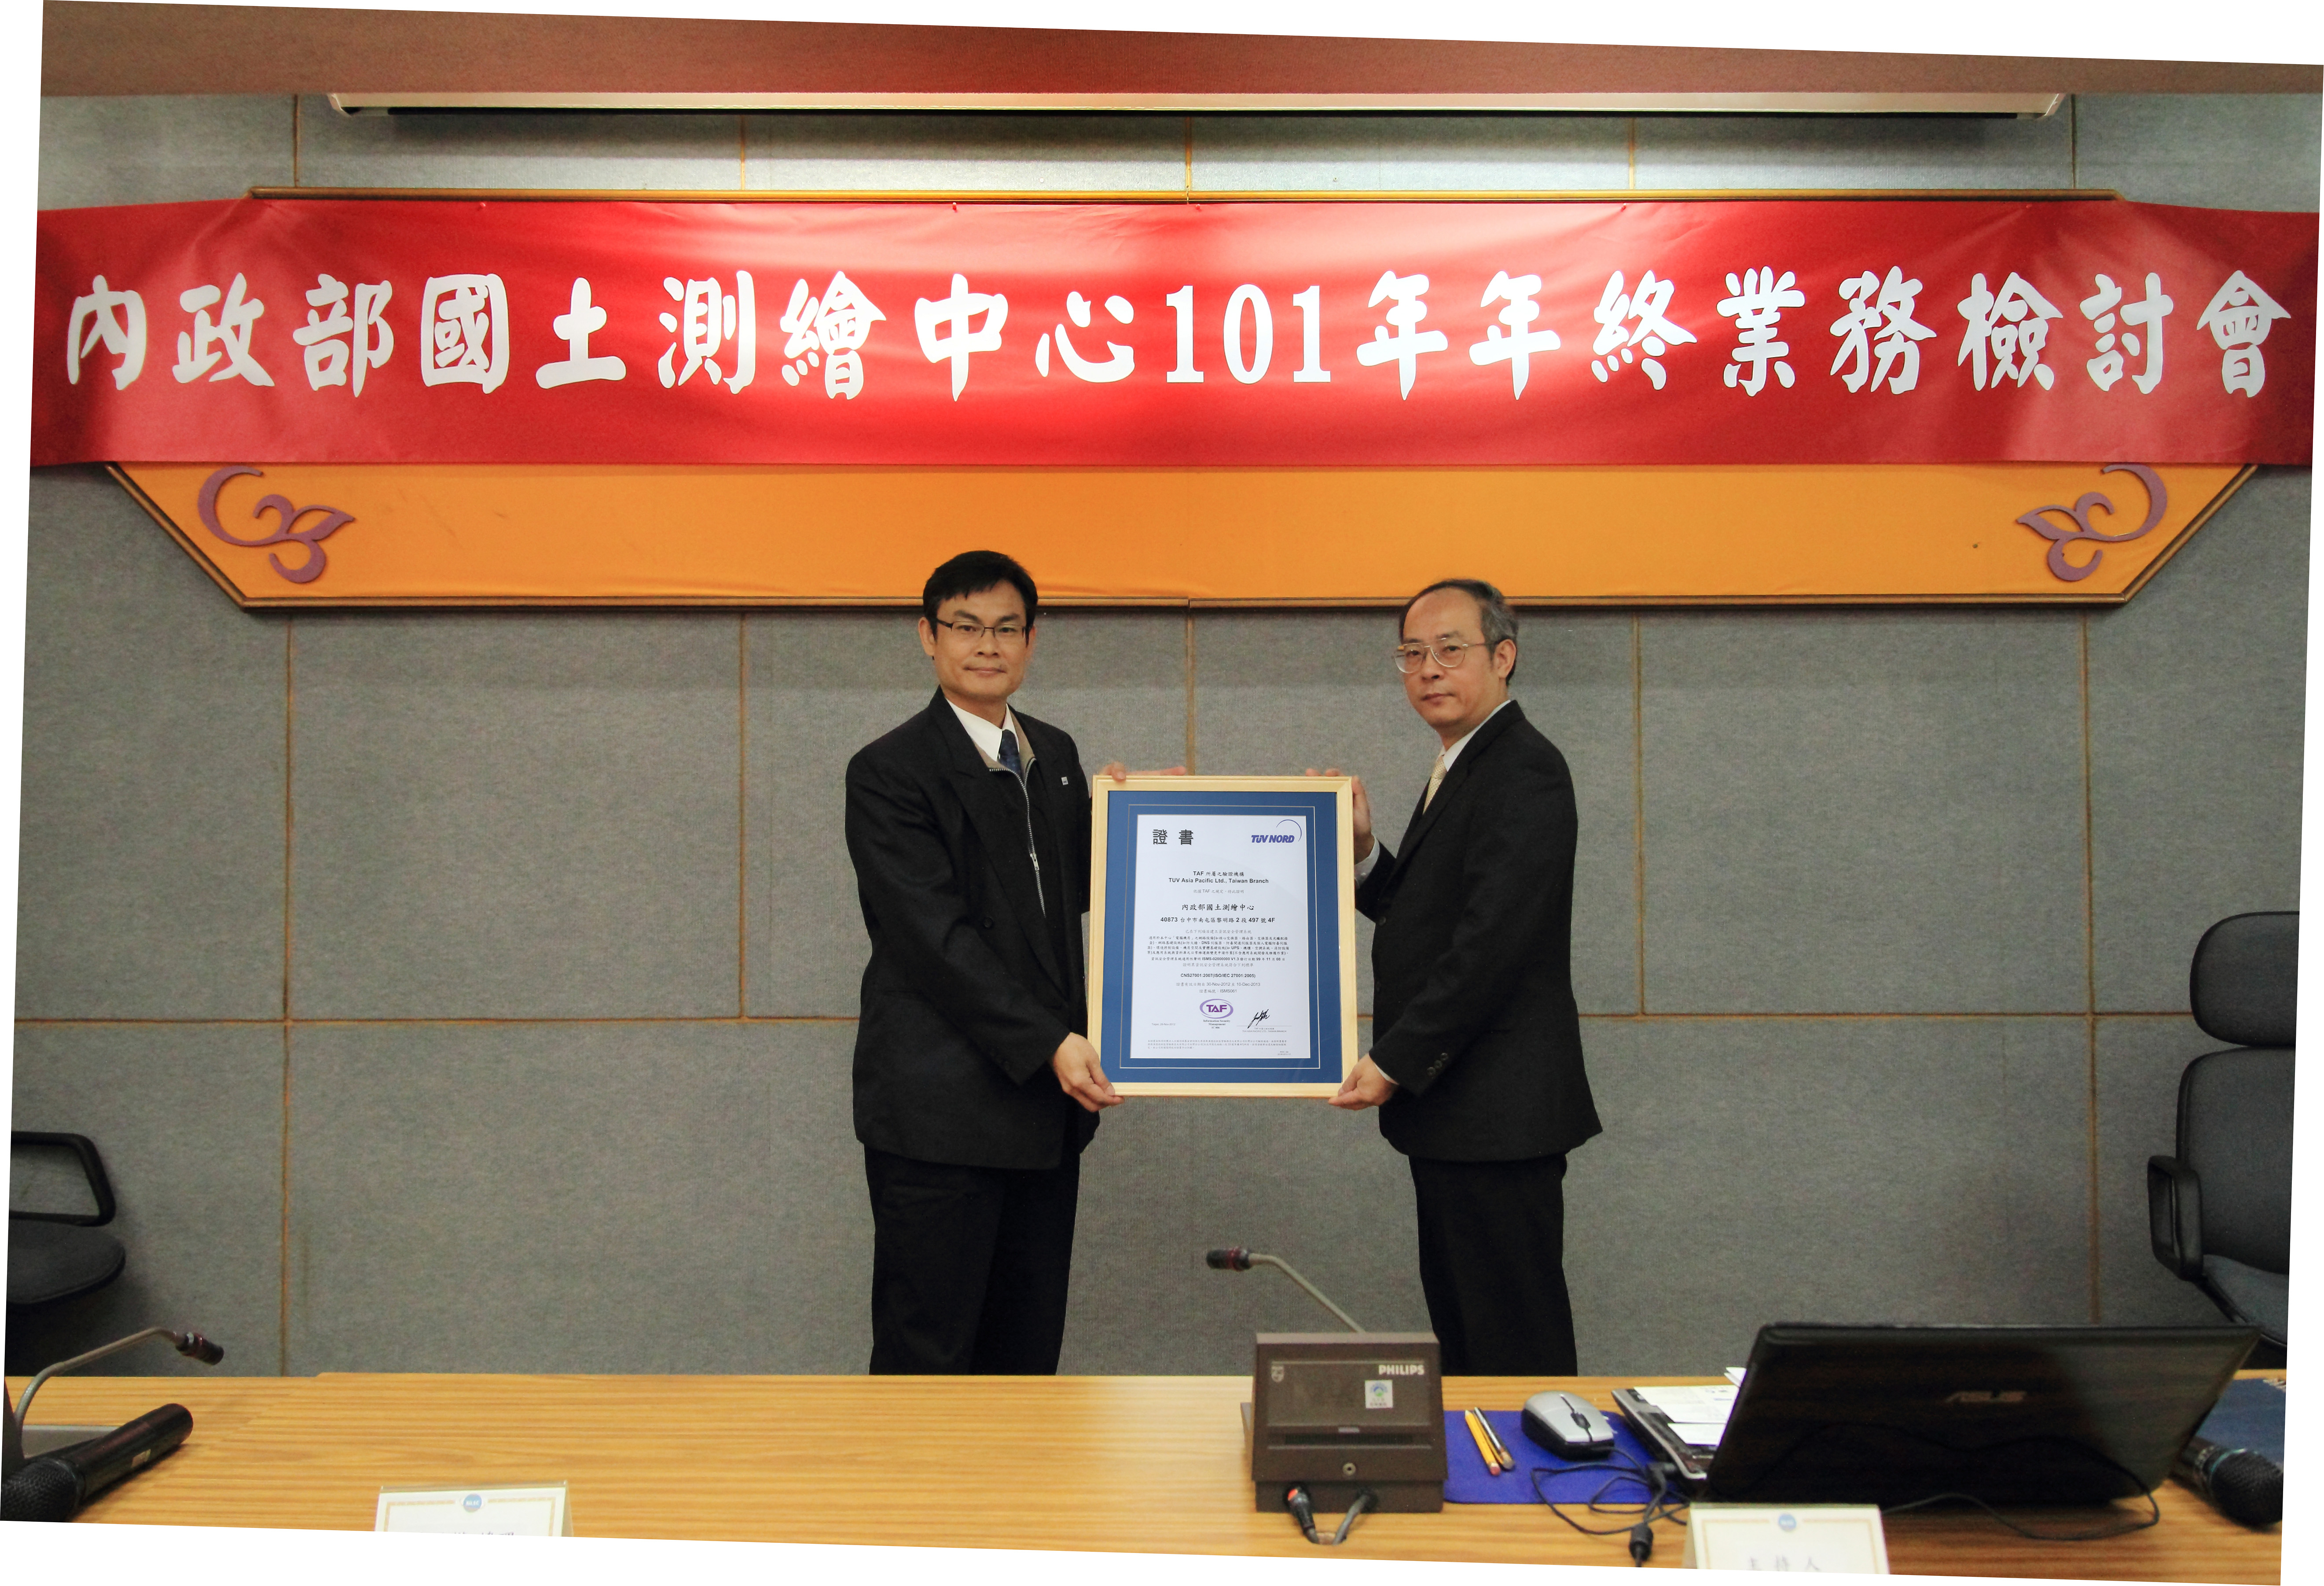 CNS 27001換證，由香港商漢德技術監督服務亞太有限公司臺灣分公司(TÜV)李治權協理代表頒證，本中心劉主任正倫代表受證。